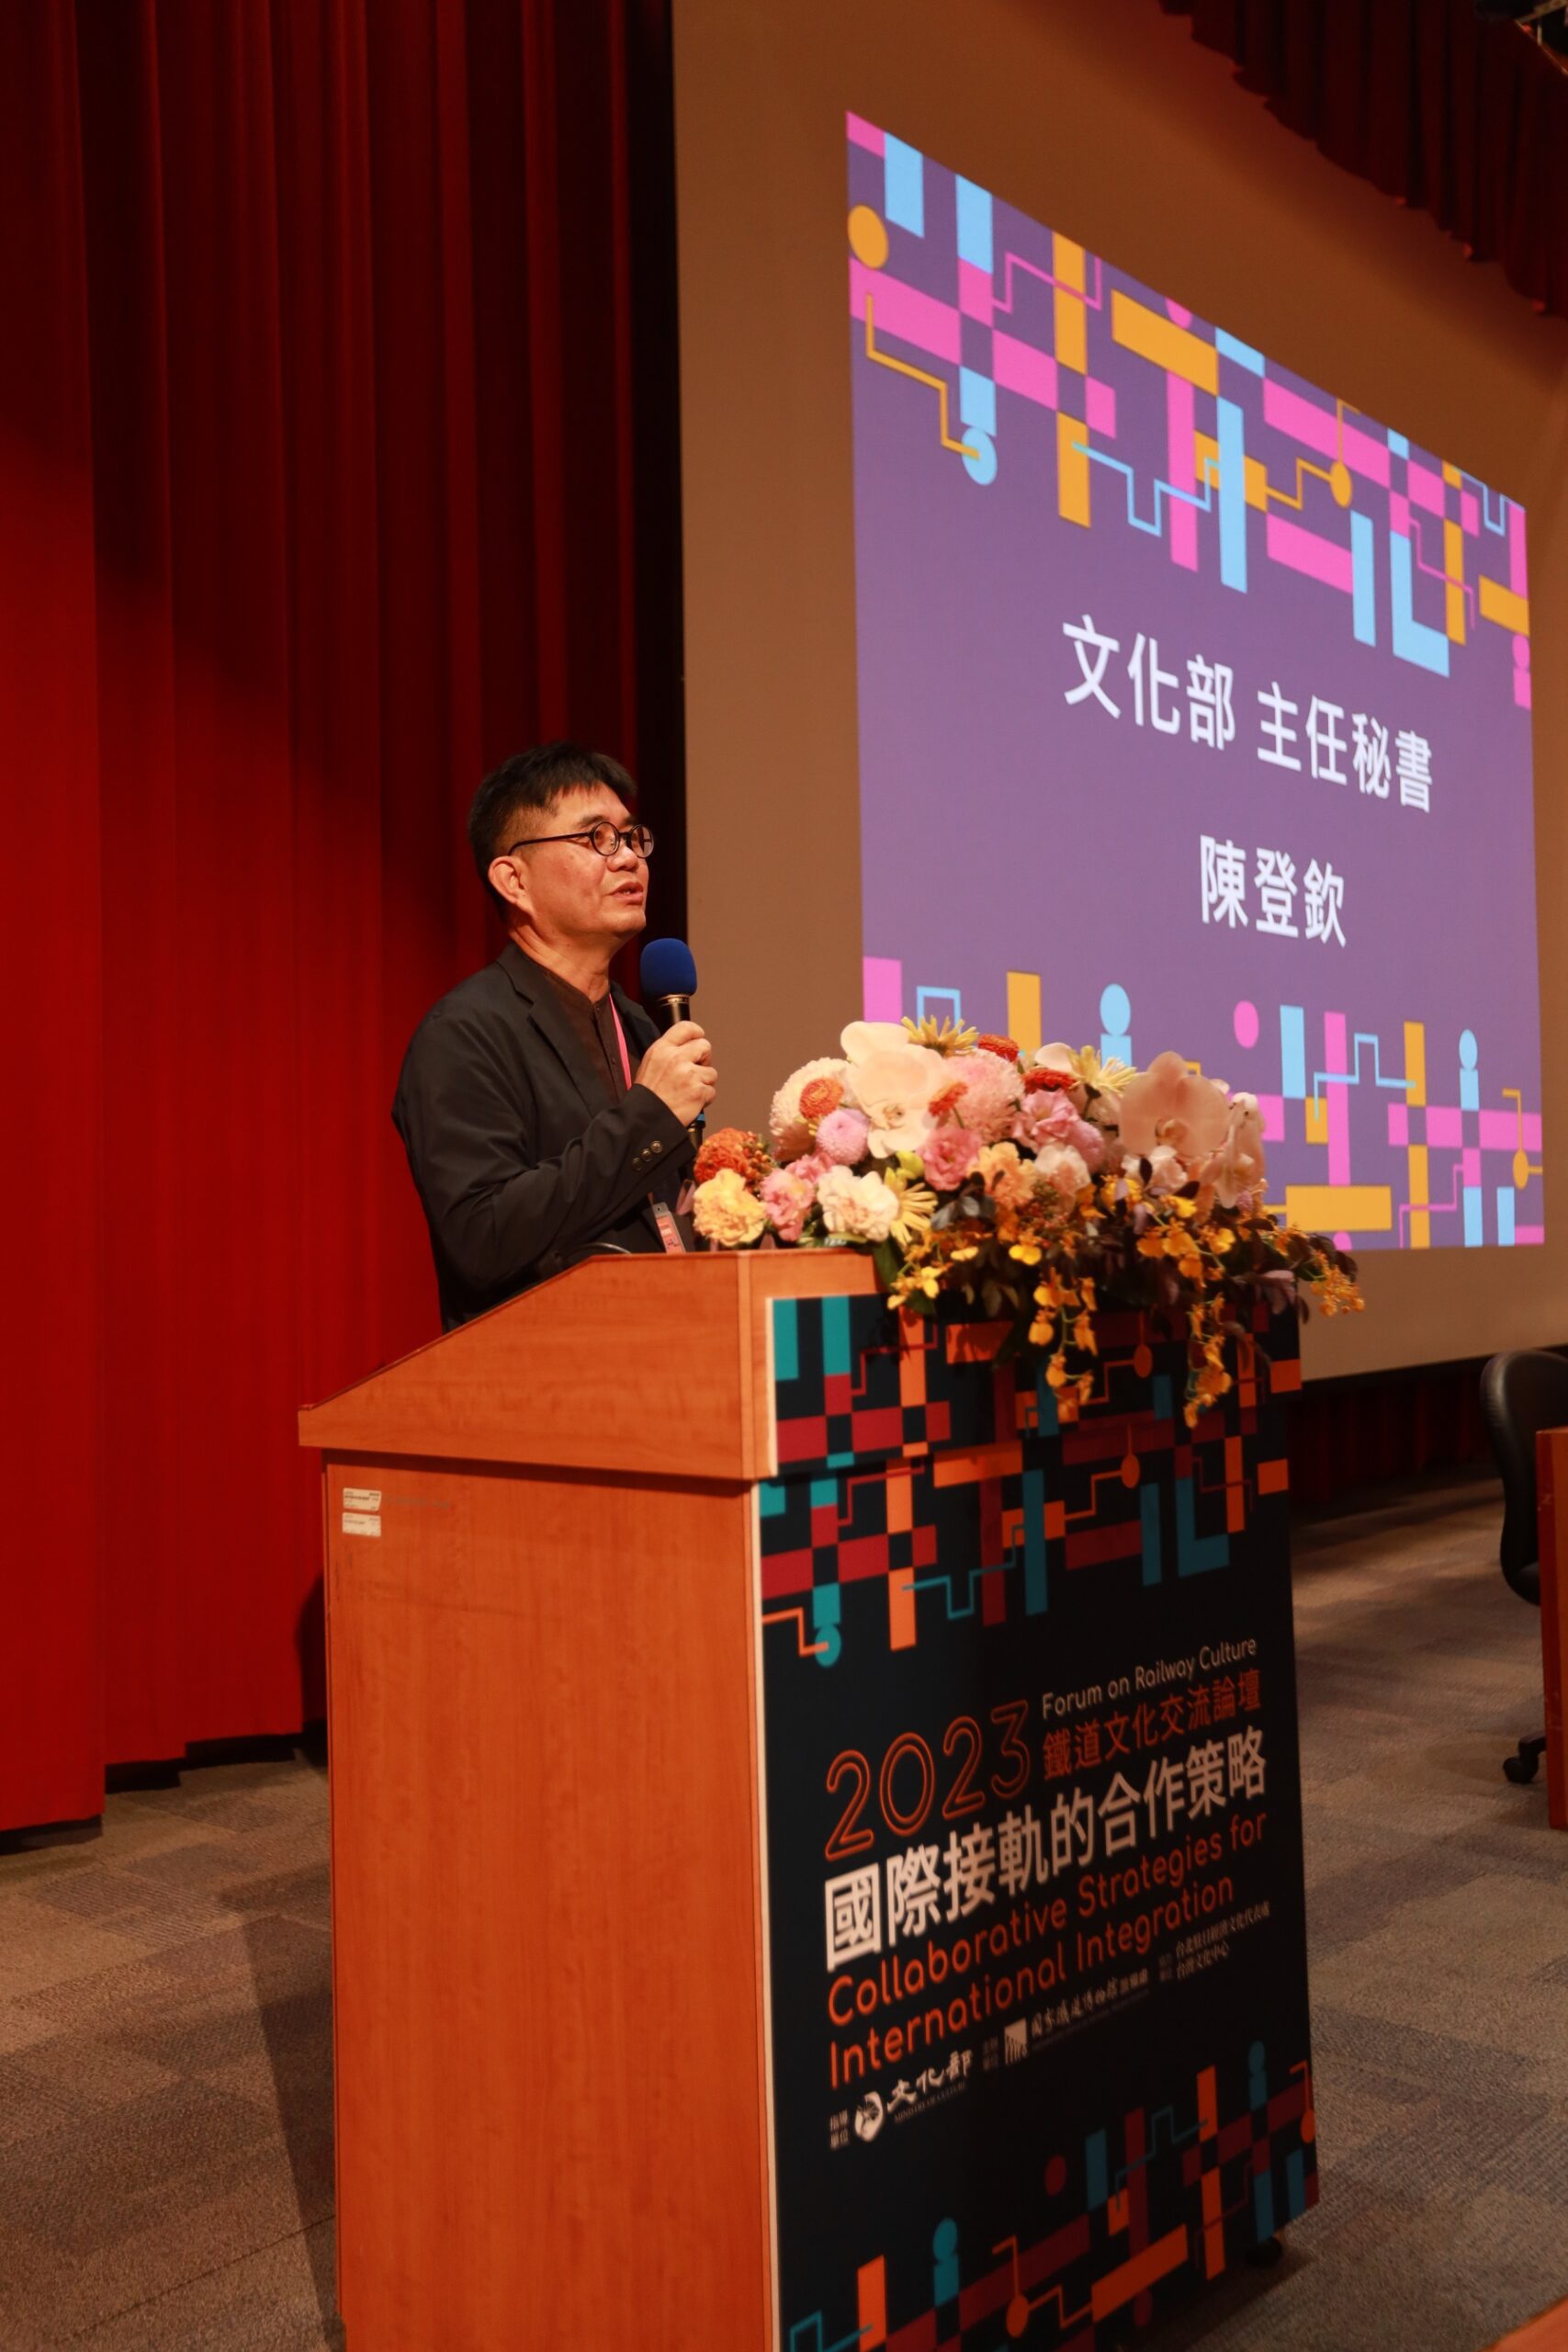 2023鐵道文化交流論壇接軌國際 邀請日本鐵道博物館與會分享 - 早安台灣新聞 | Morning Taiwan News